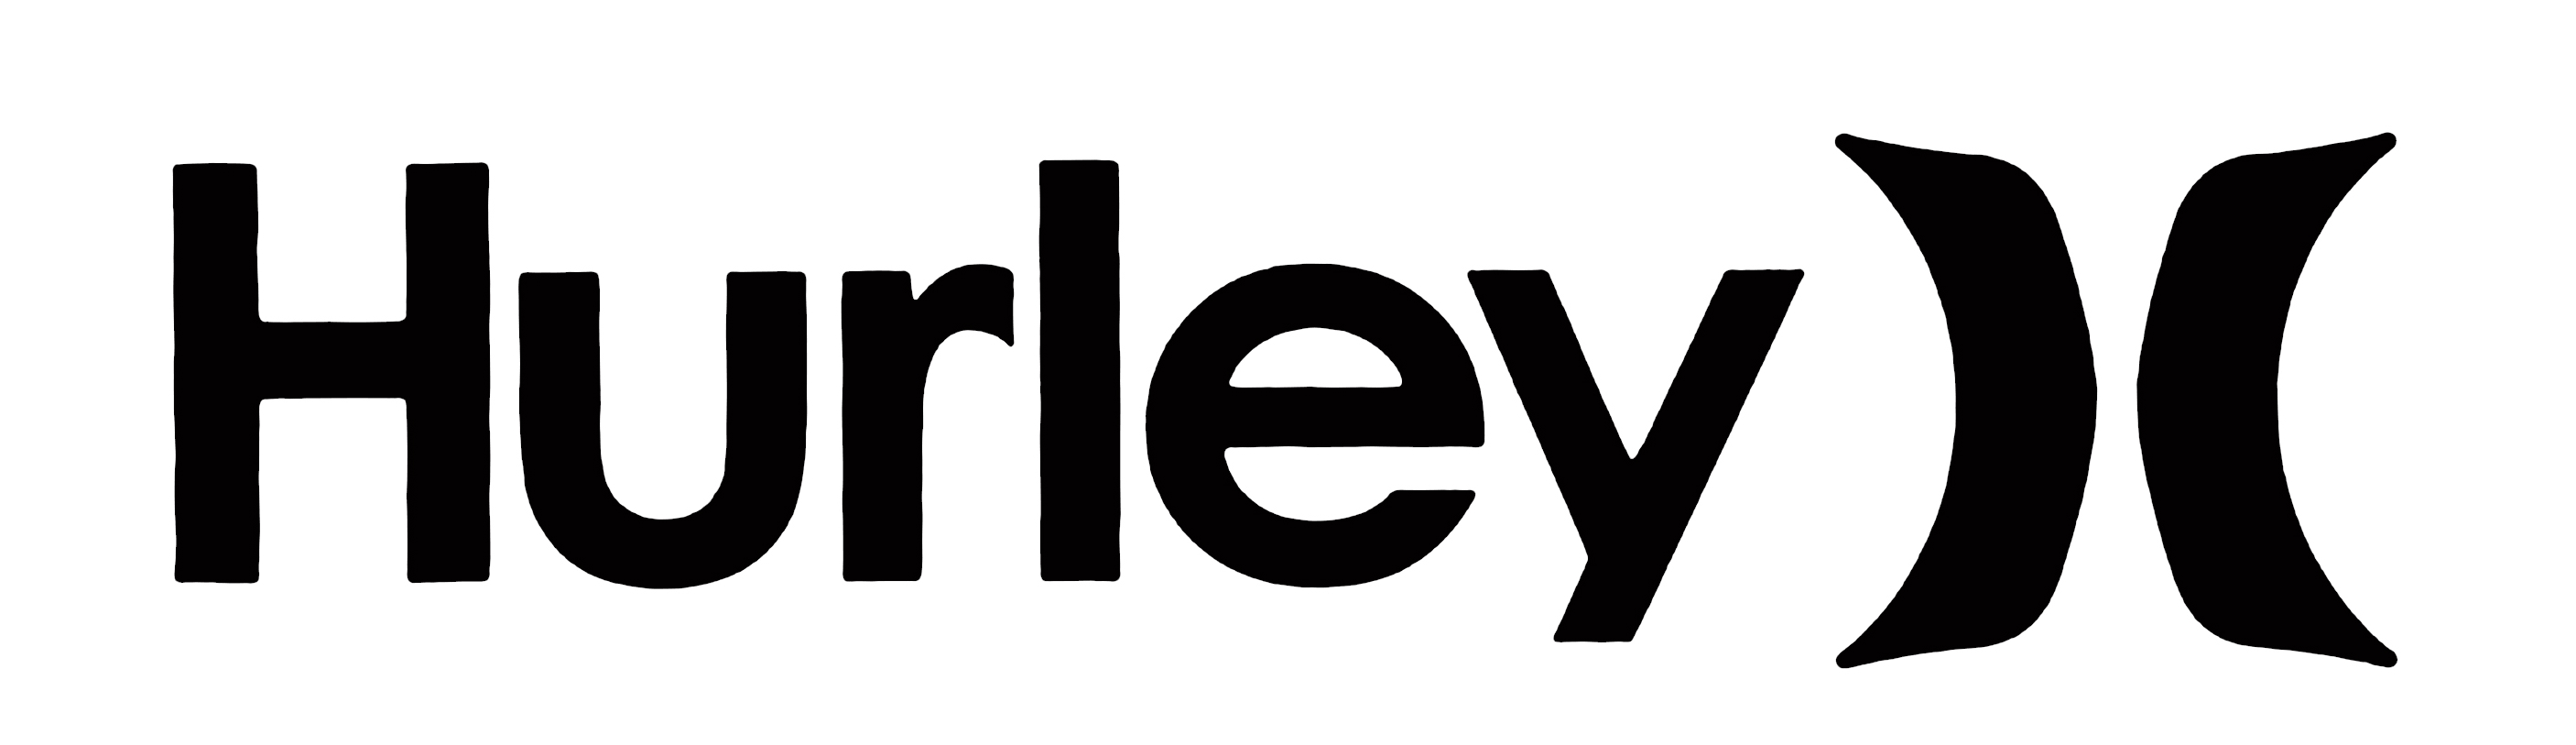 Hurley Logo Vector - HD Wallpaper 